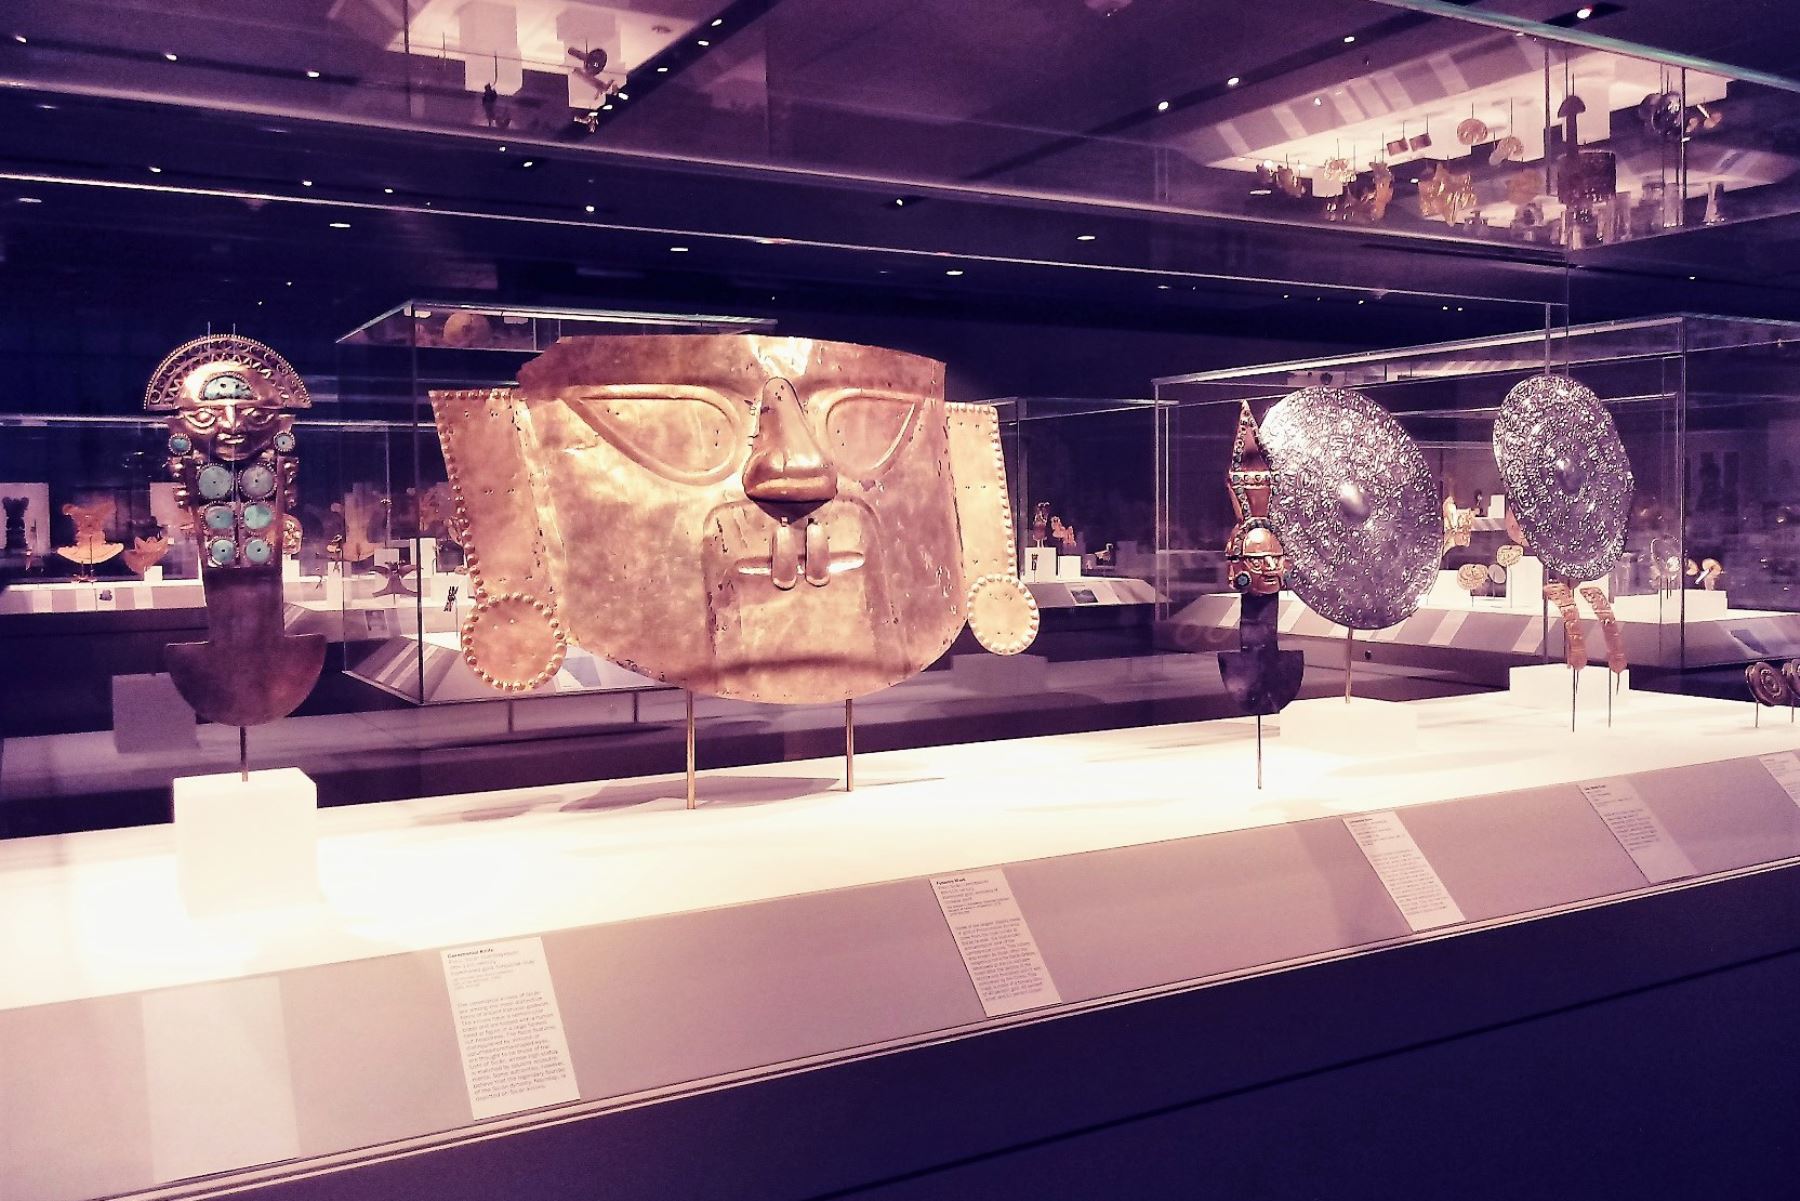 Una colección de joyas de oro y plata del Señor de Sipán, el Viejo Señor de Sipán y de la Sacerdotisa de Chornancap se exhiben desde hace unas semanas en el prestigioso Museo Metropolitano de Arte de Nueva York, Estados Unidos. ANDINA